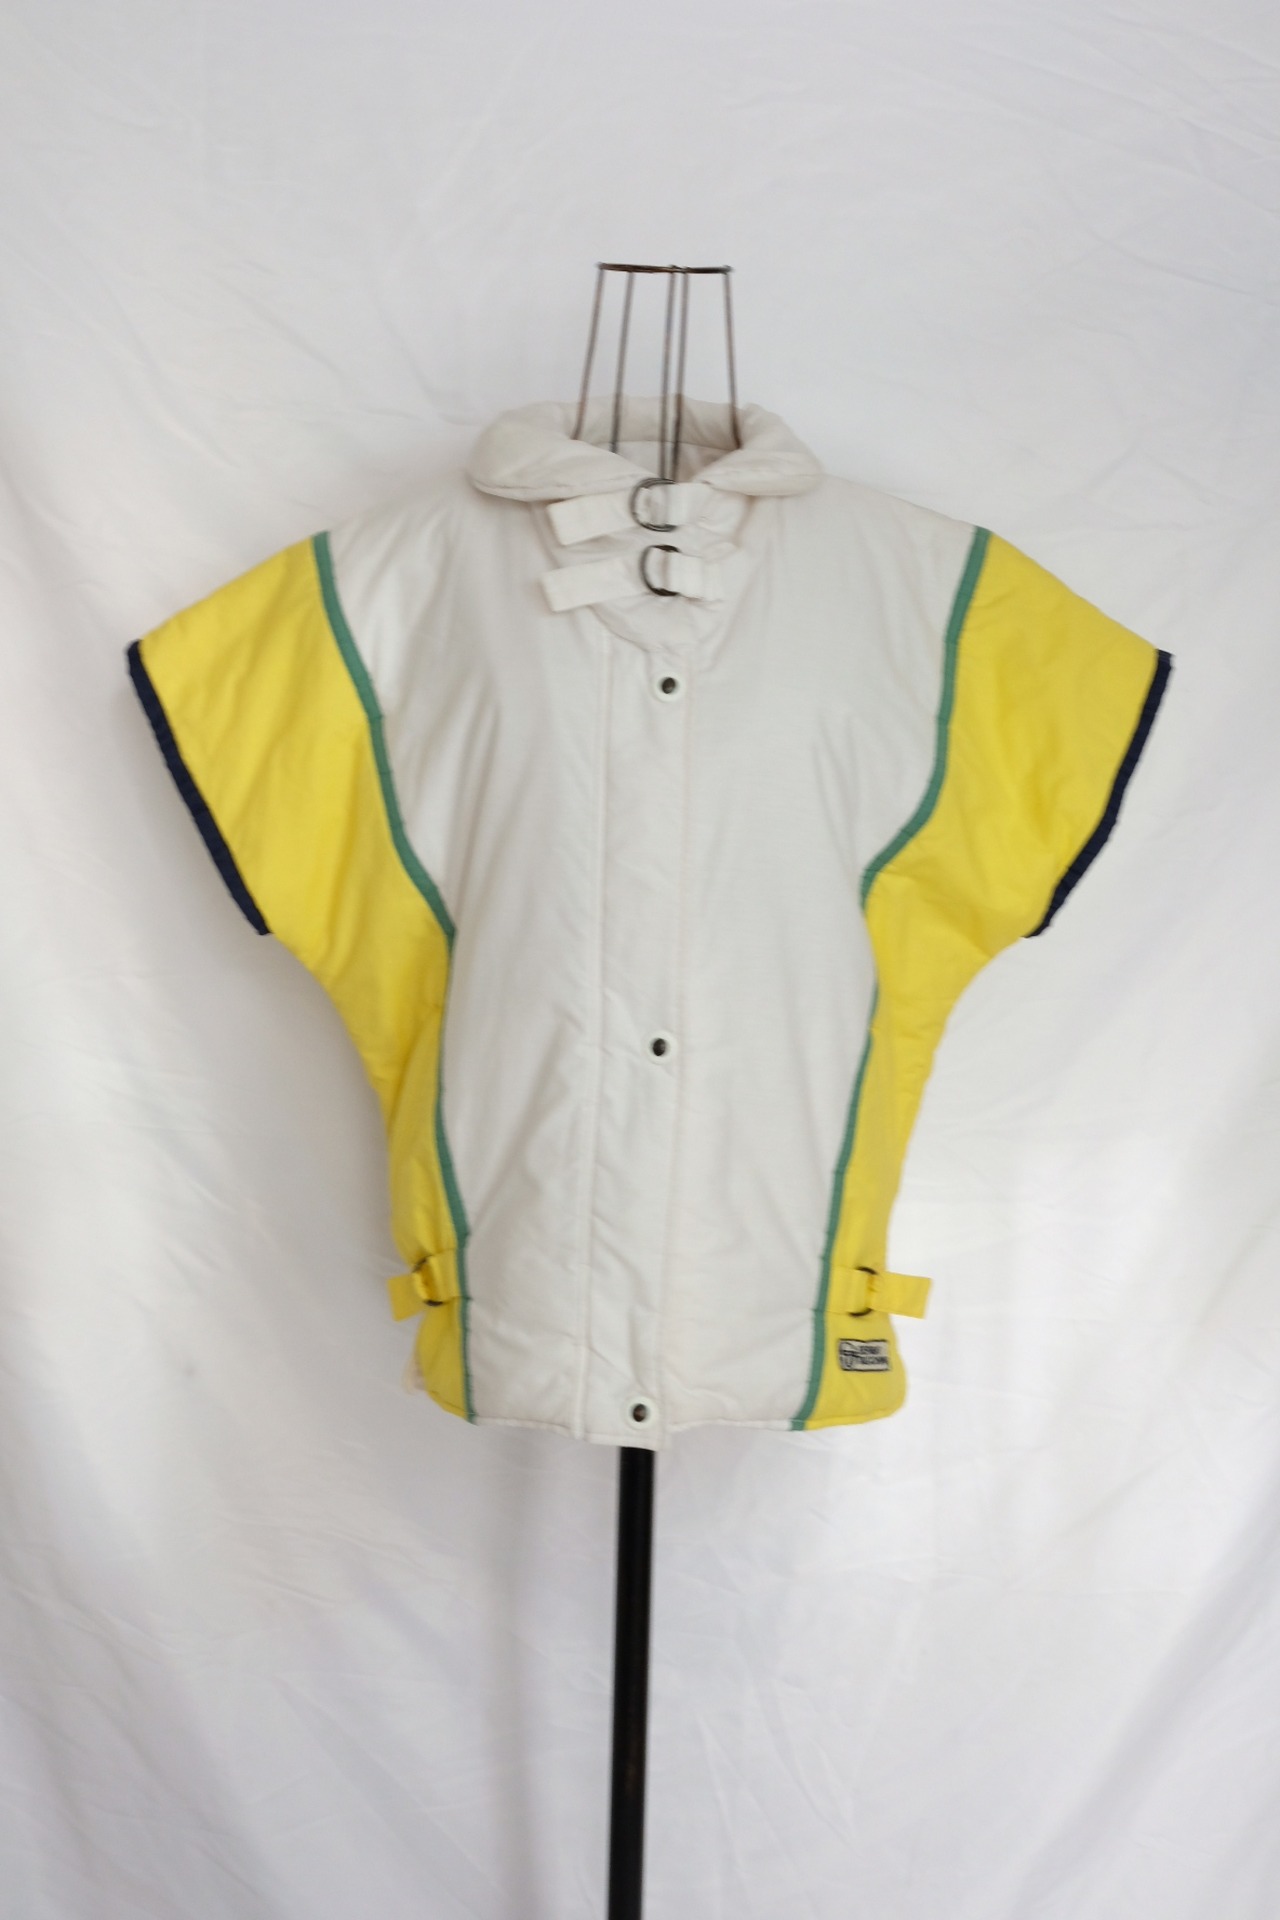 80’s “SERGIO TACCHINI” Vest Made in Italy